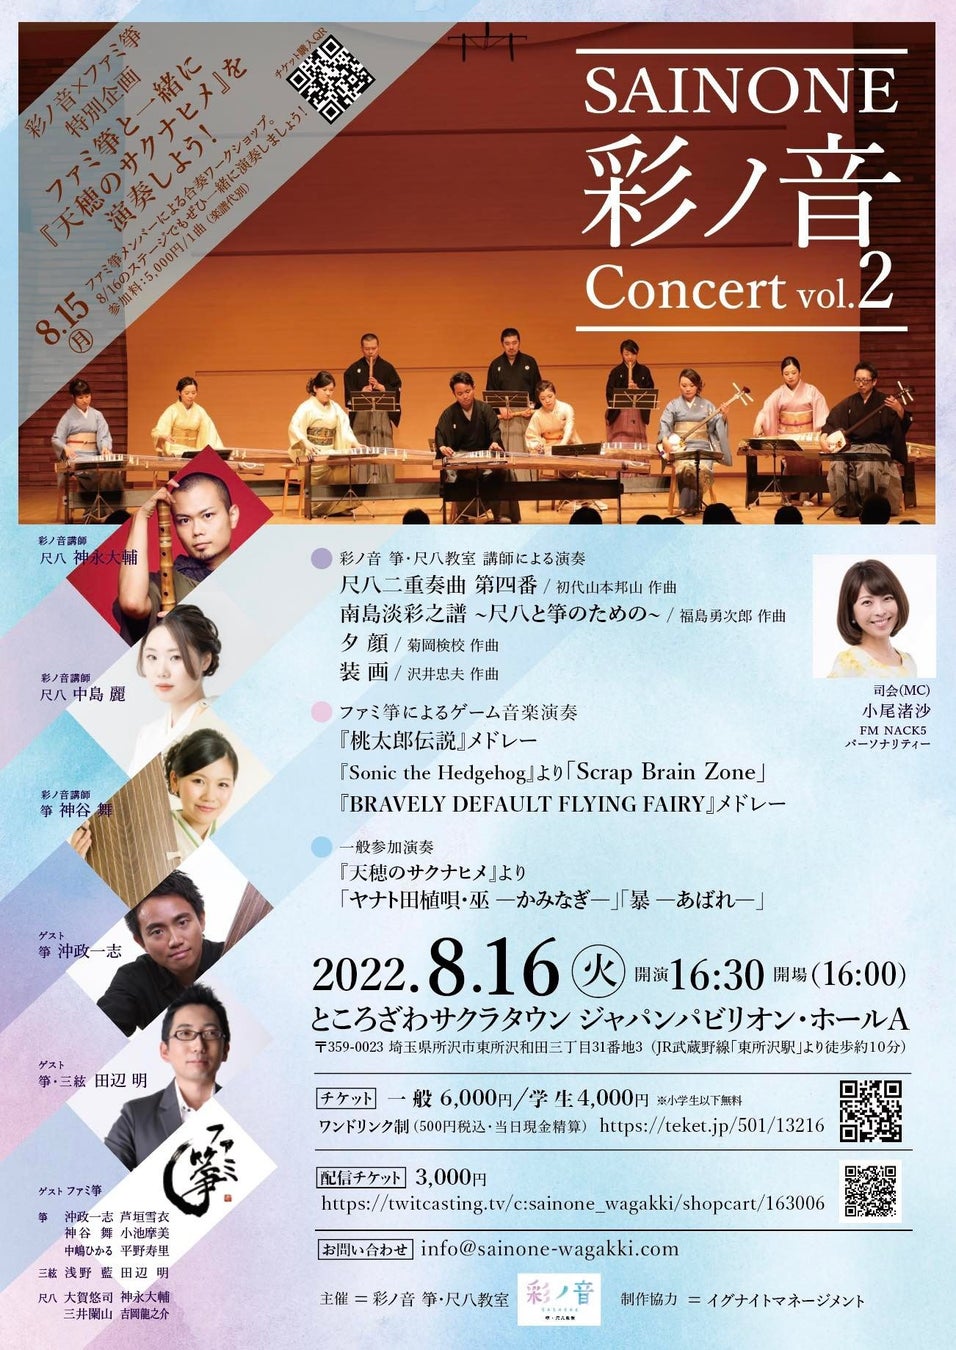 ゲーム音楽を中心に、和楽器の演奏を存分に楽しめる夏の音楽イベントが8月16日に開催